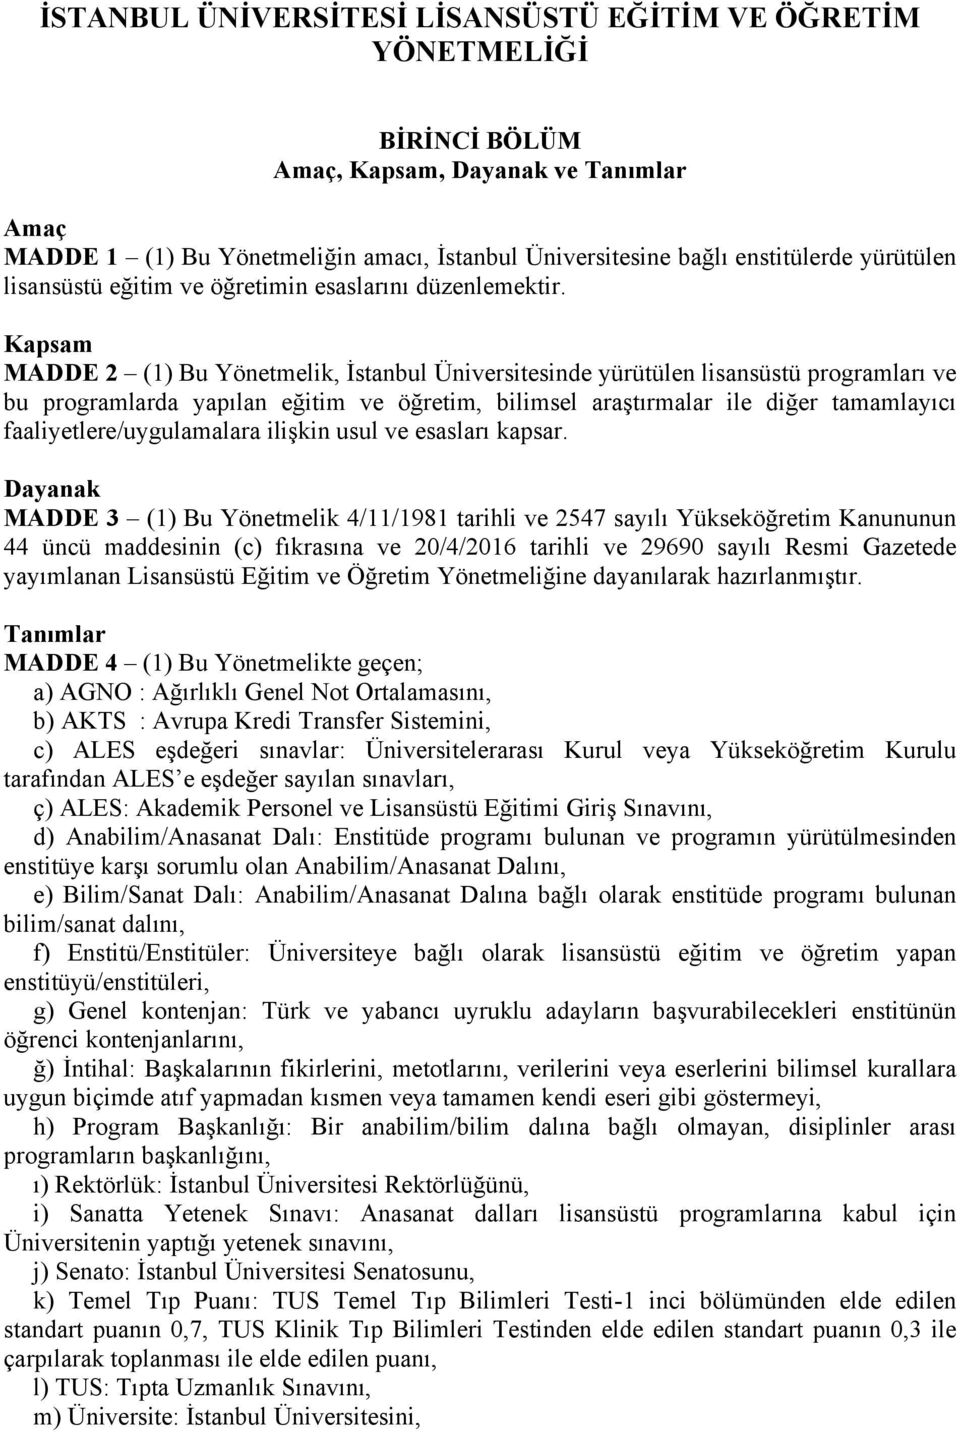 Kapsam MADDE 2 (1) Bu Yönetmelik, İstanbul Üniversitesinde yürütülen lisansüstü programları ve bu programlarda yapılan eğitim ve öğretim, bilimsel araştırmalar ile diğer tamamlayıcı